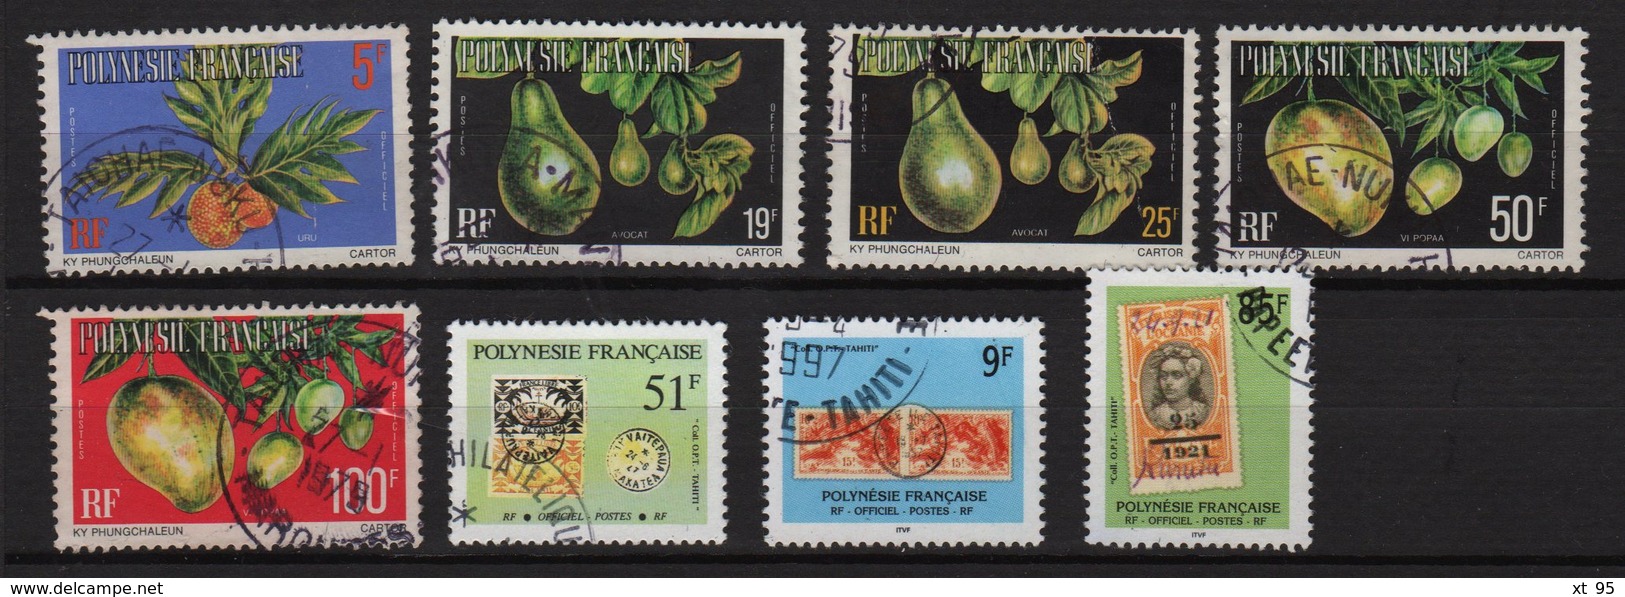 Polynesie - collection de timbres obliteres des origines aux annees 2000 (TB) - cote +285€ - voir scan